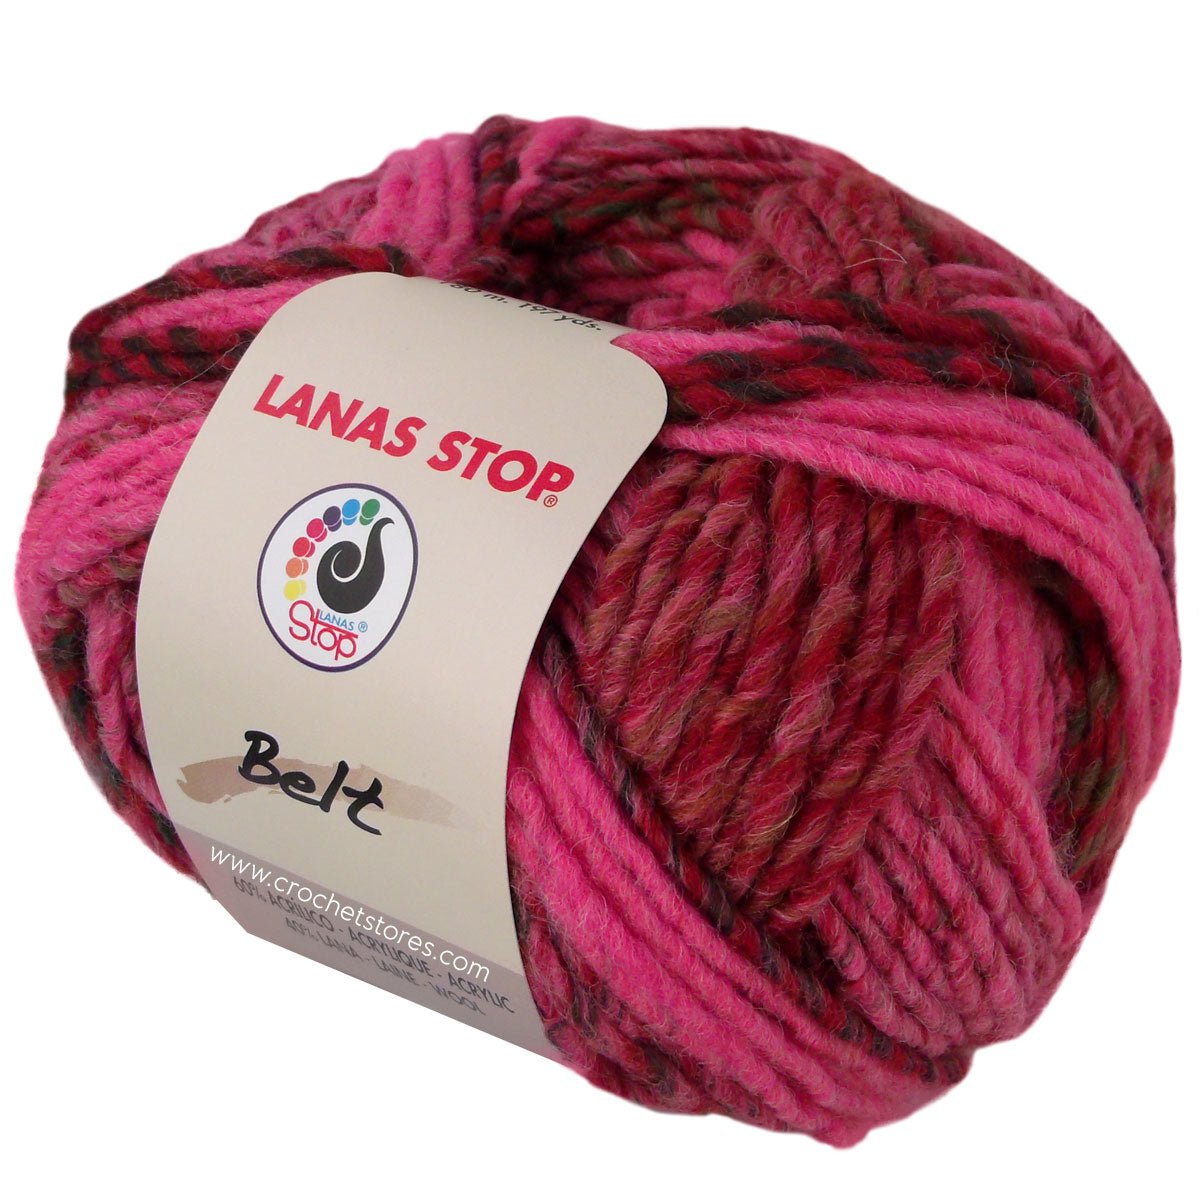 BELT - LANAS STOP - La Boutique de las Lanas